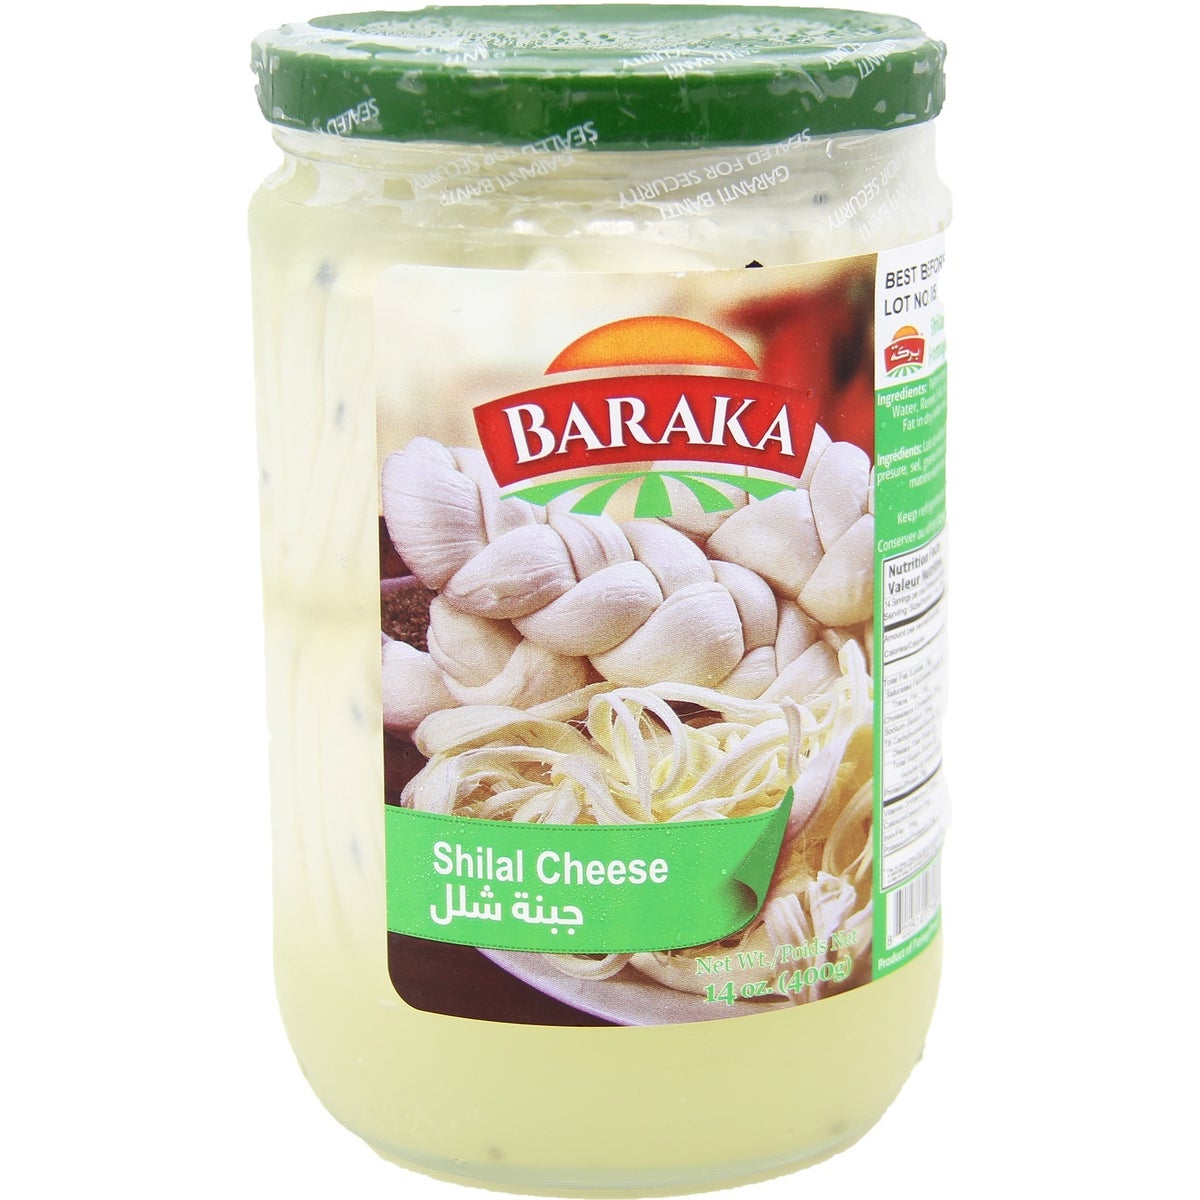 Shilal Cheese in glass jar  "Baraka" 400g x 6